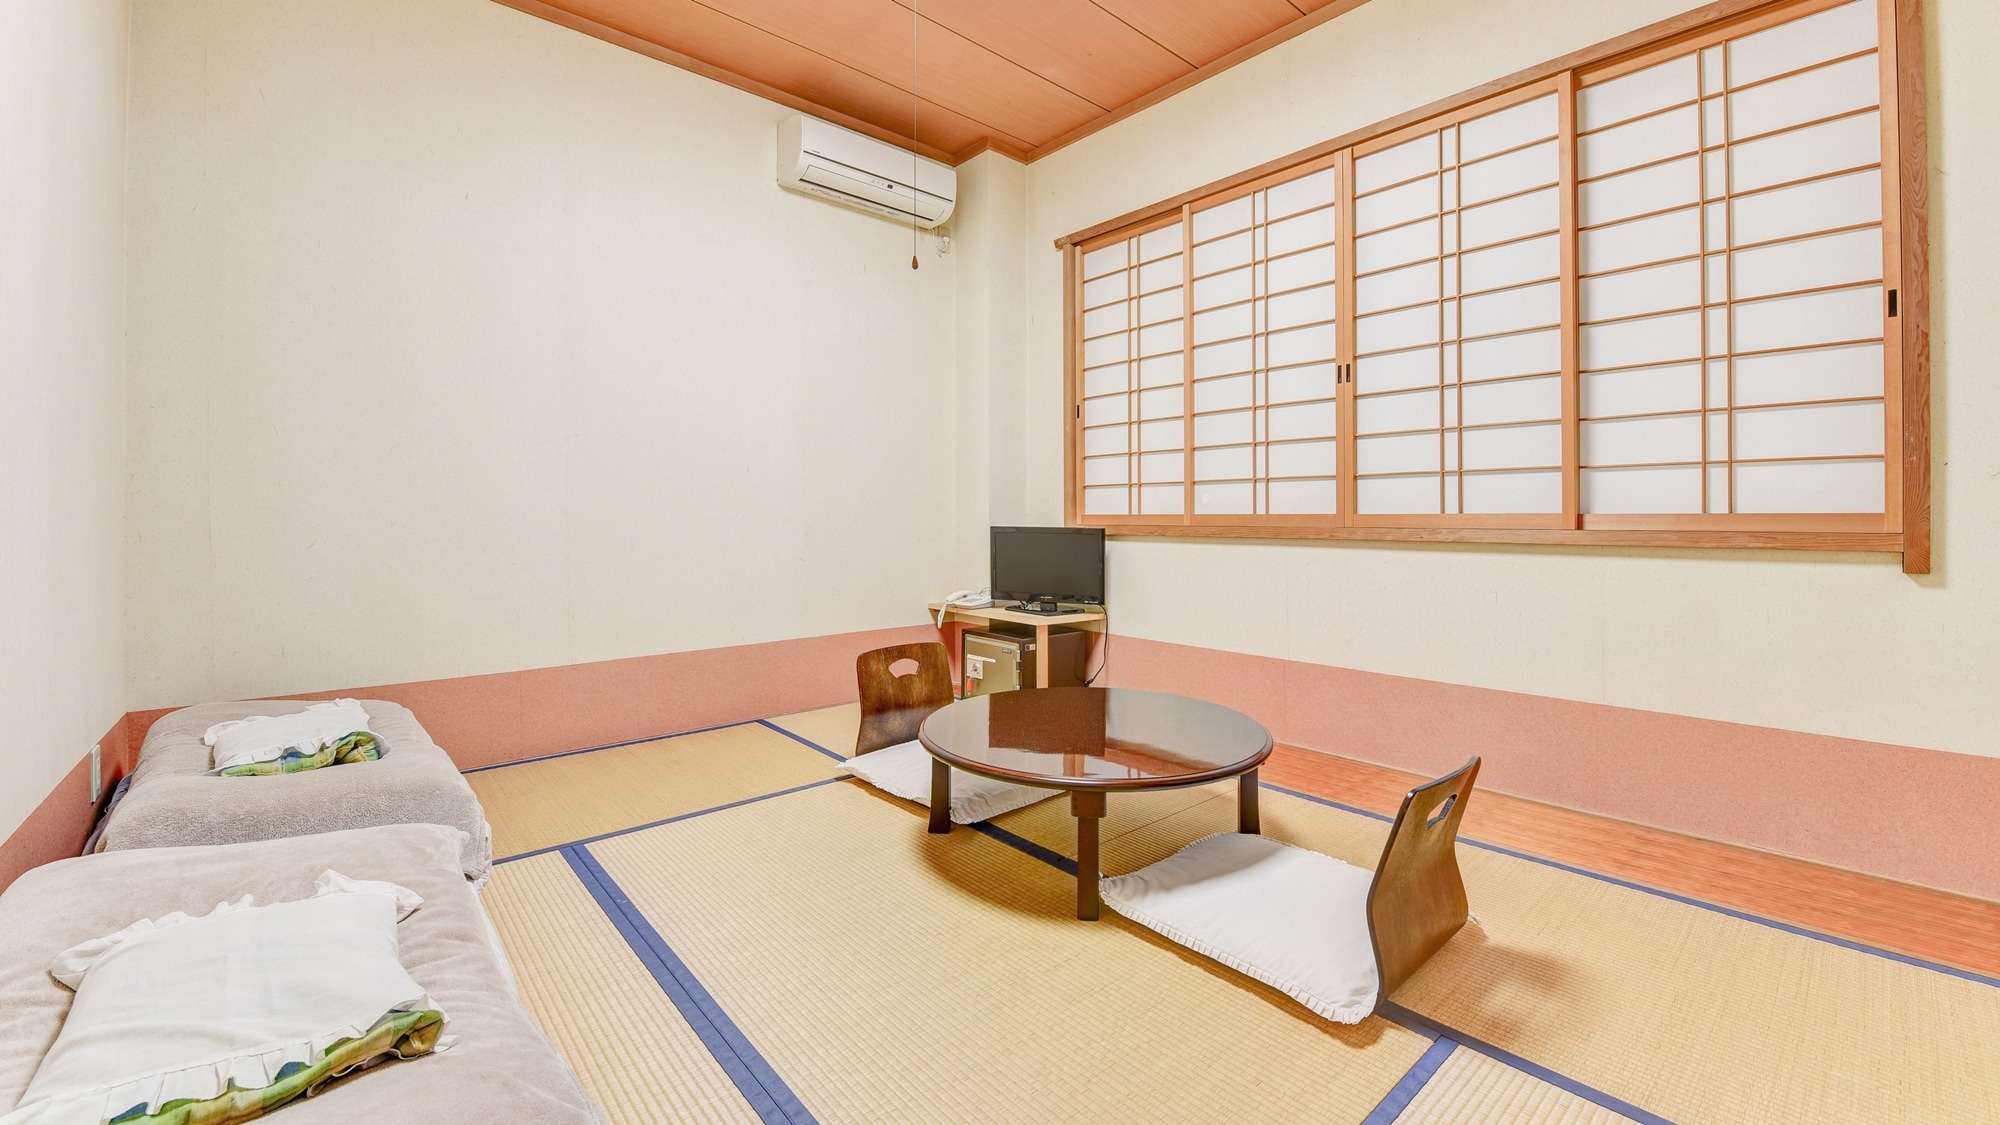 * ห้องสไตล์ญี่ปุ่น 6 เสื่อทาทามิ / พักผ่อนในวันหยุดในห้องที่มีกลิ่นเสื่อทาทามิจางๆ เหมาะสำหรับคู่รักและคู่รักที่มาพัก!